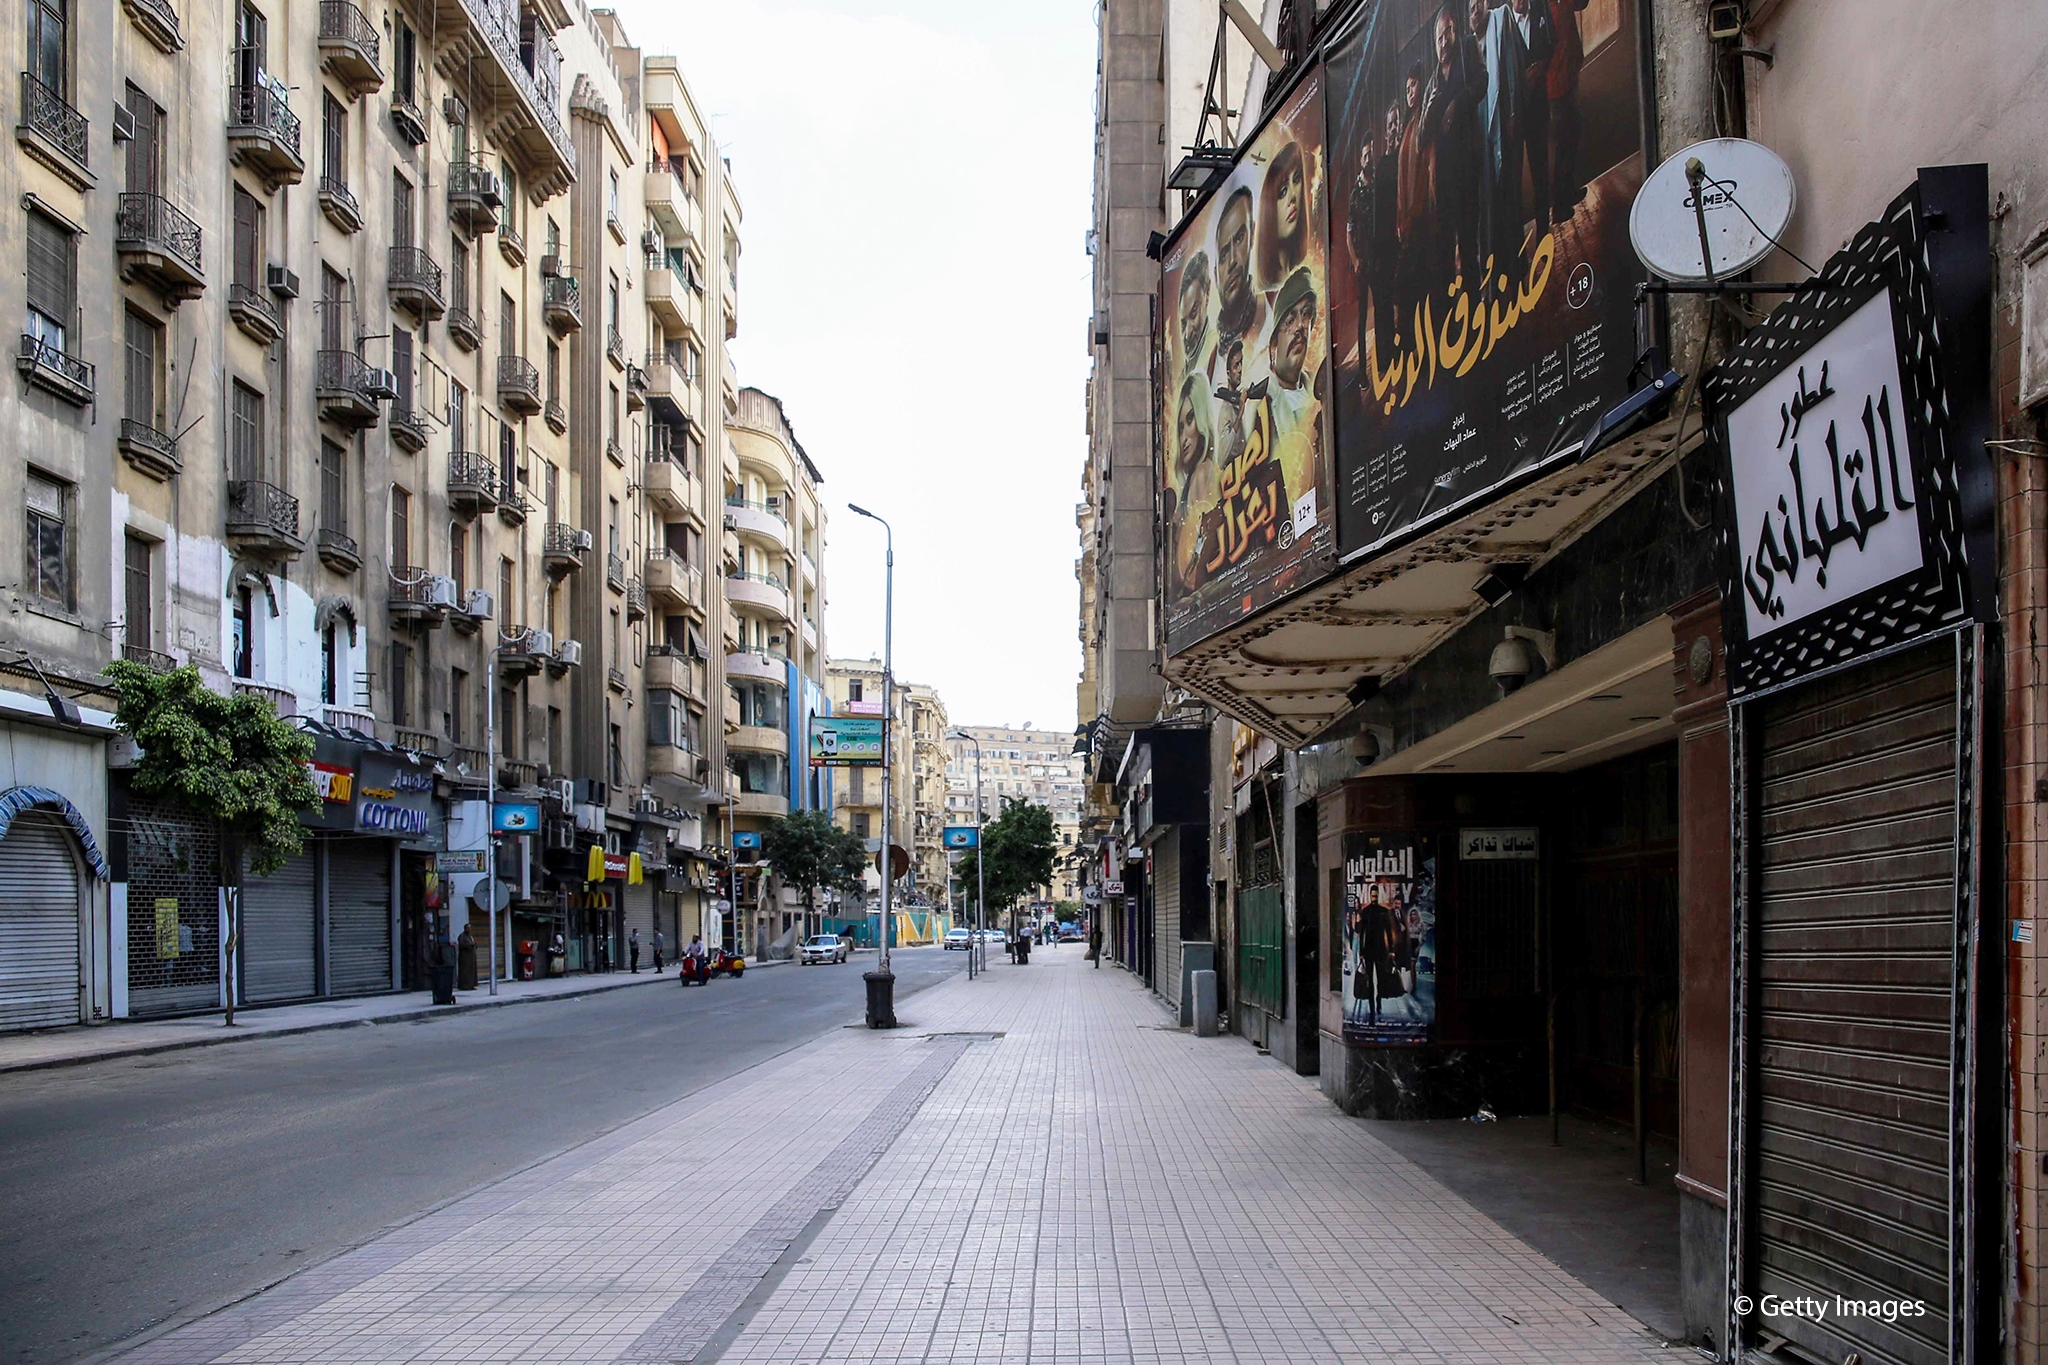 Dieses Bild, das am 24. Mai 2020 aufgenommen wurde, zeigt einen Blick auf das historische Kinotheater Metro entlang der Straße Talaat Harb in der fast menschenleeren Innenstadt der ägyptischen Hauptstadt Kairo am ersten Tag von Eid al-Fitr, dem muslimischen Feiertag, der mit dem Ende des heiligen Fastenmonats Ramadan beginnt. -Ägypten hatte zuvor eine Verlängerung der nächtlichen Ausgangssperre und andere Maßnahmen angekündigt, um große Versammlungen während der Eid-al-Fitr-Feiertage zu verhindern.  (Foto: SAMER ABDALLAH/AFP über Getty Images)  Übersetzt mit www.DeepL.com/Translator (kostenlose Version)